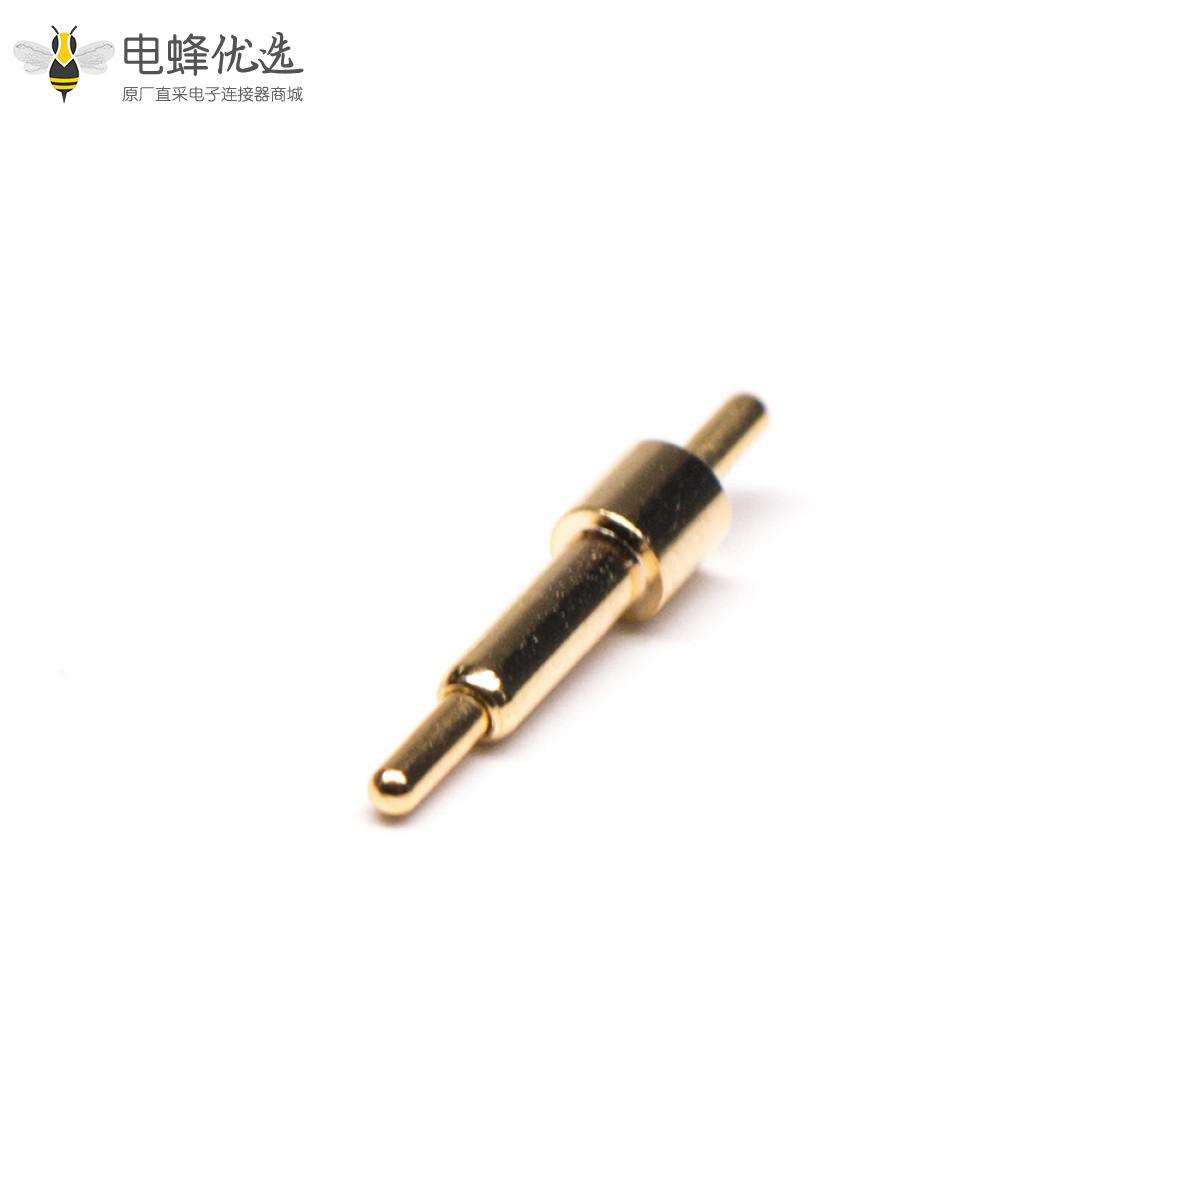 双头Pogo Pin针直式浮动安装黄铜镀金弹簧针连接器